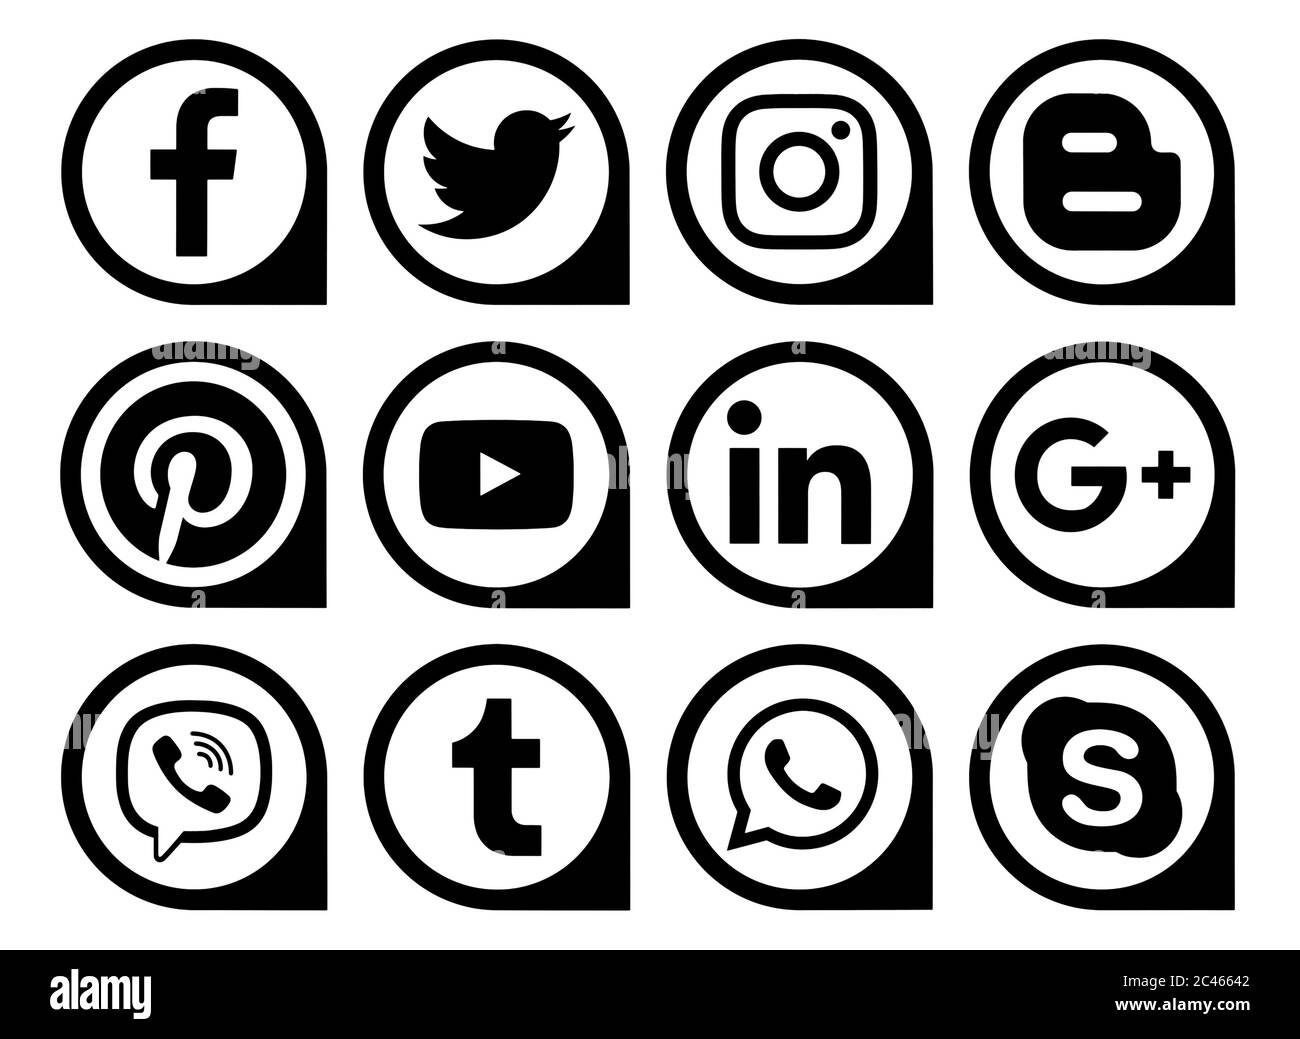 Kiev, Ukraine - 11 mars 2019: Les médias sociaux populaires icônes noires pointeurs imprimés sur papier: Facebook, Twitter, Instagram, Pinterest, LinkedIn, Viber, Banque D'Images